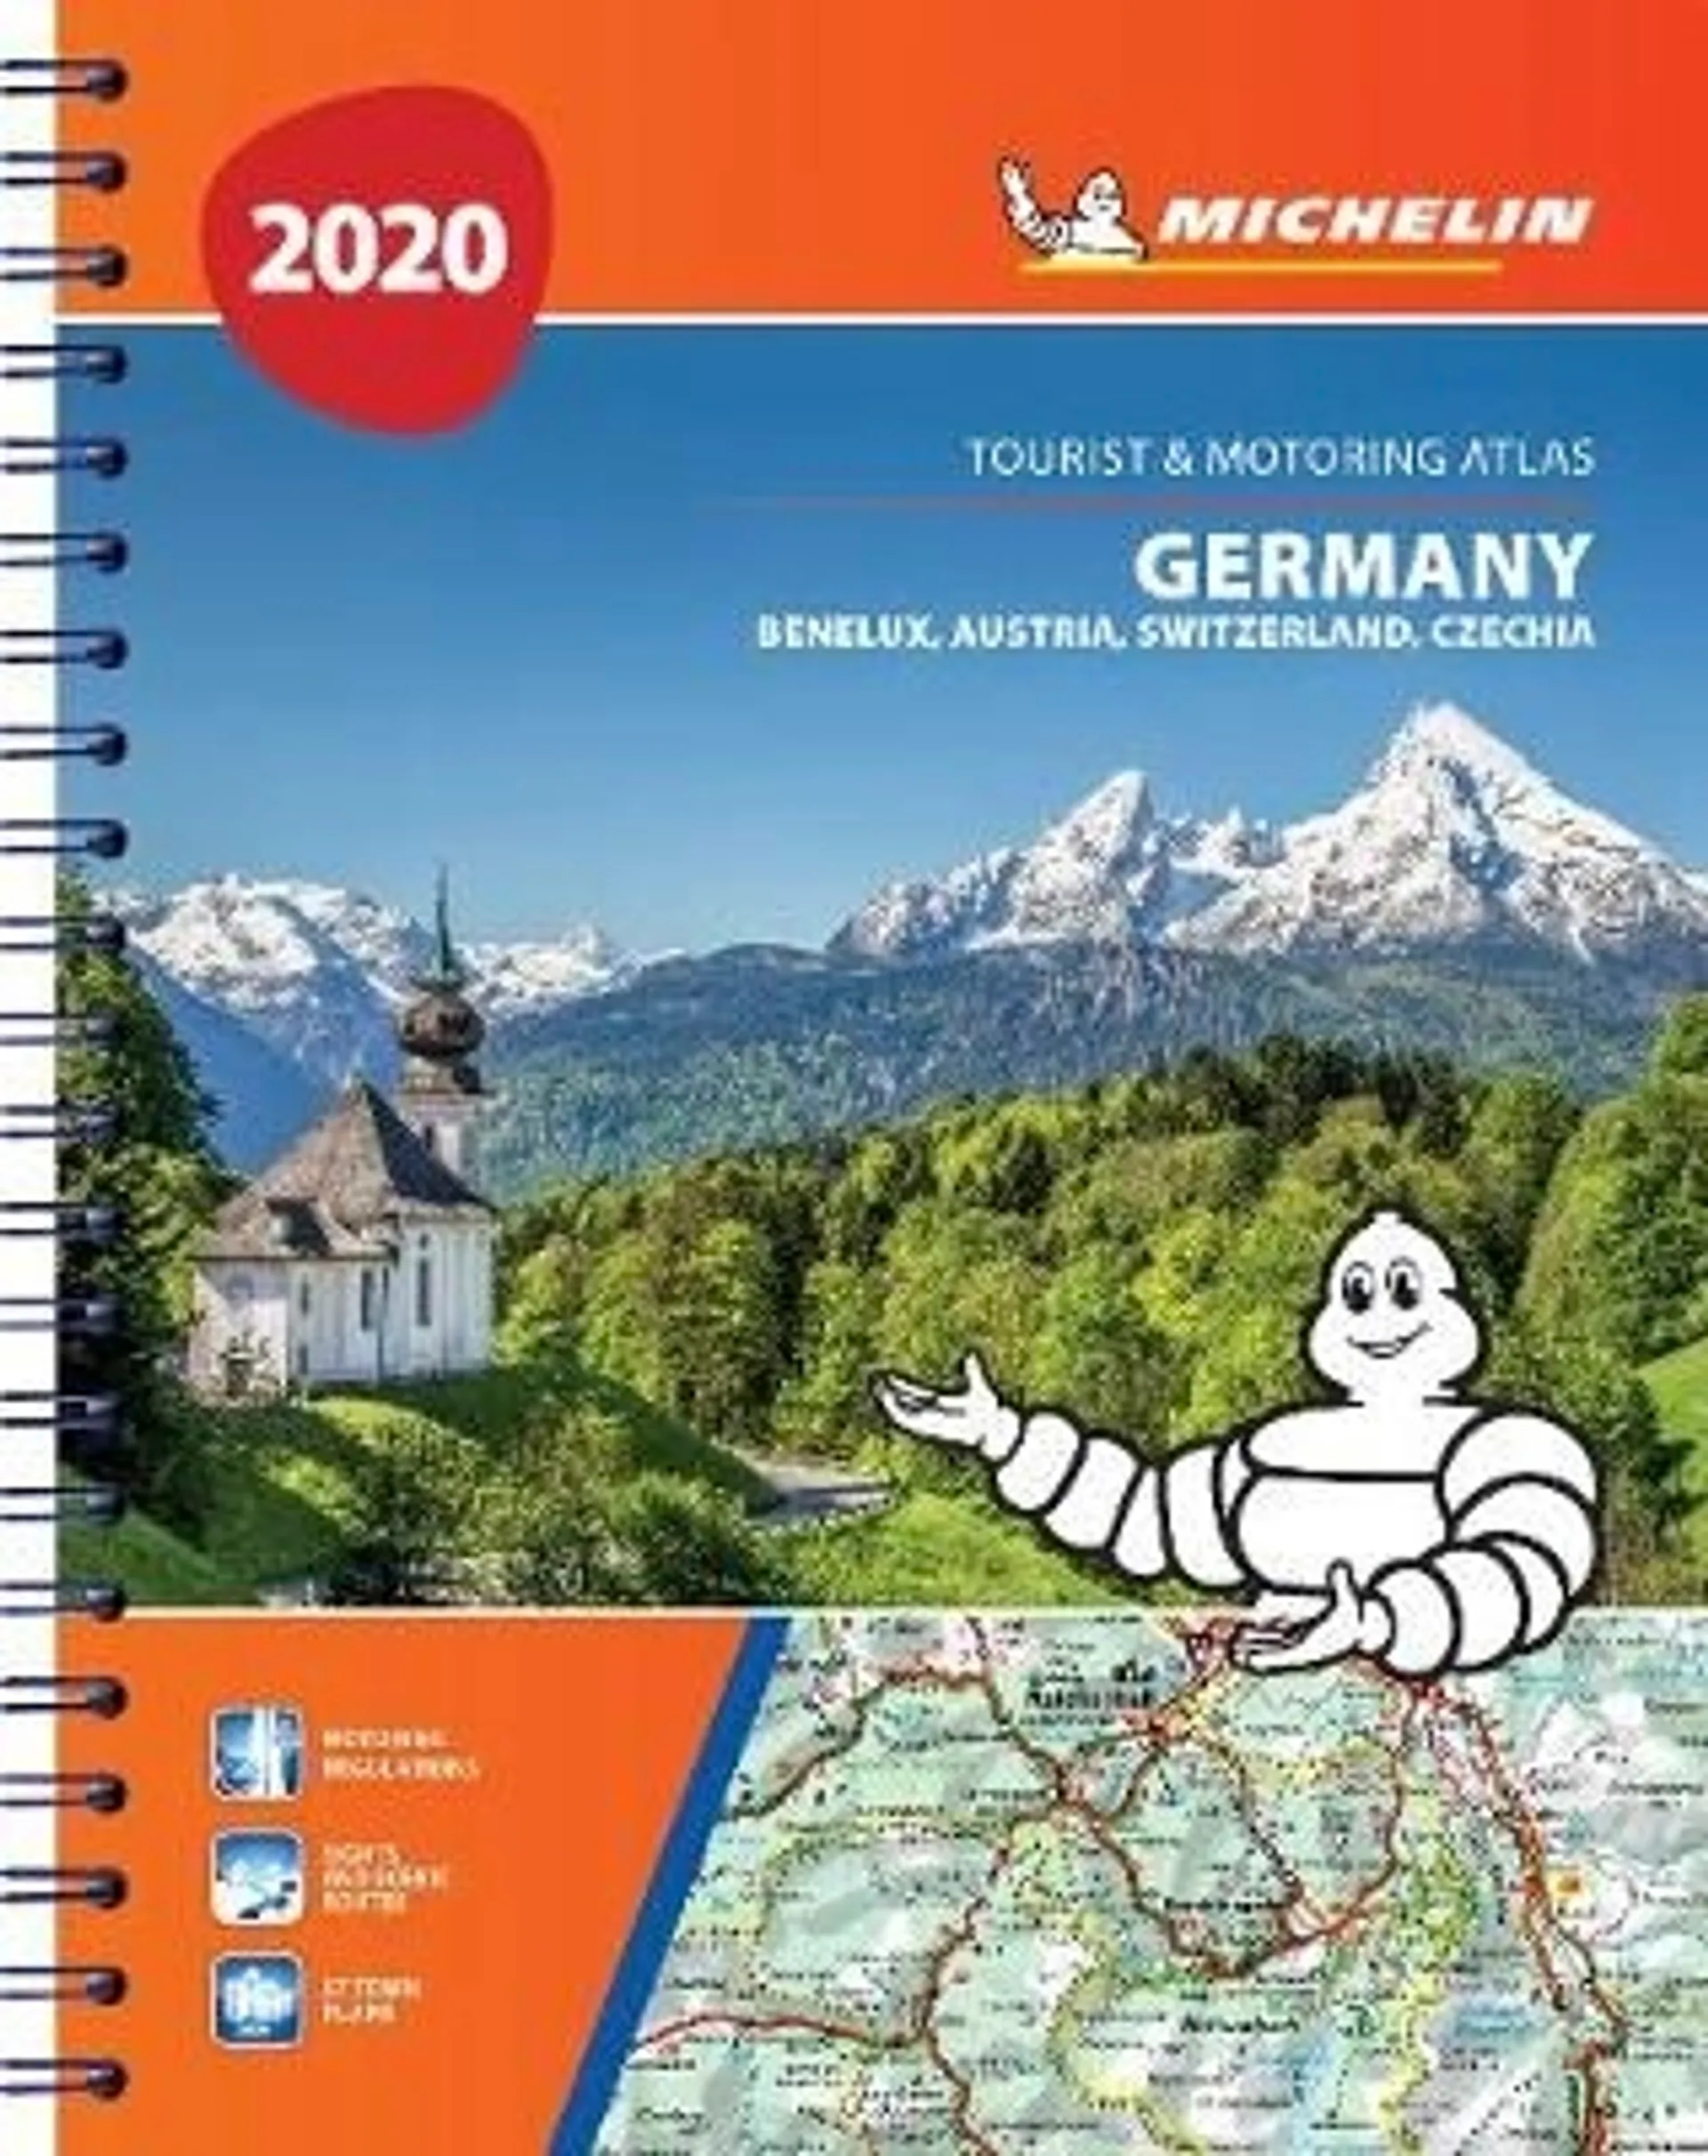 Germany, Benelux, Austria, Switzerland, Czech Republic / Saksa, Benelux, Itävalta, Sveitsi, Tsekki 2020 1:30 000/1:600 000 Michelin tiekartasto